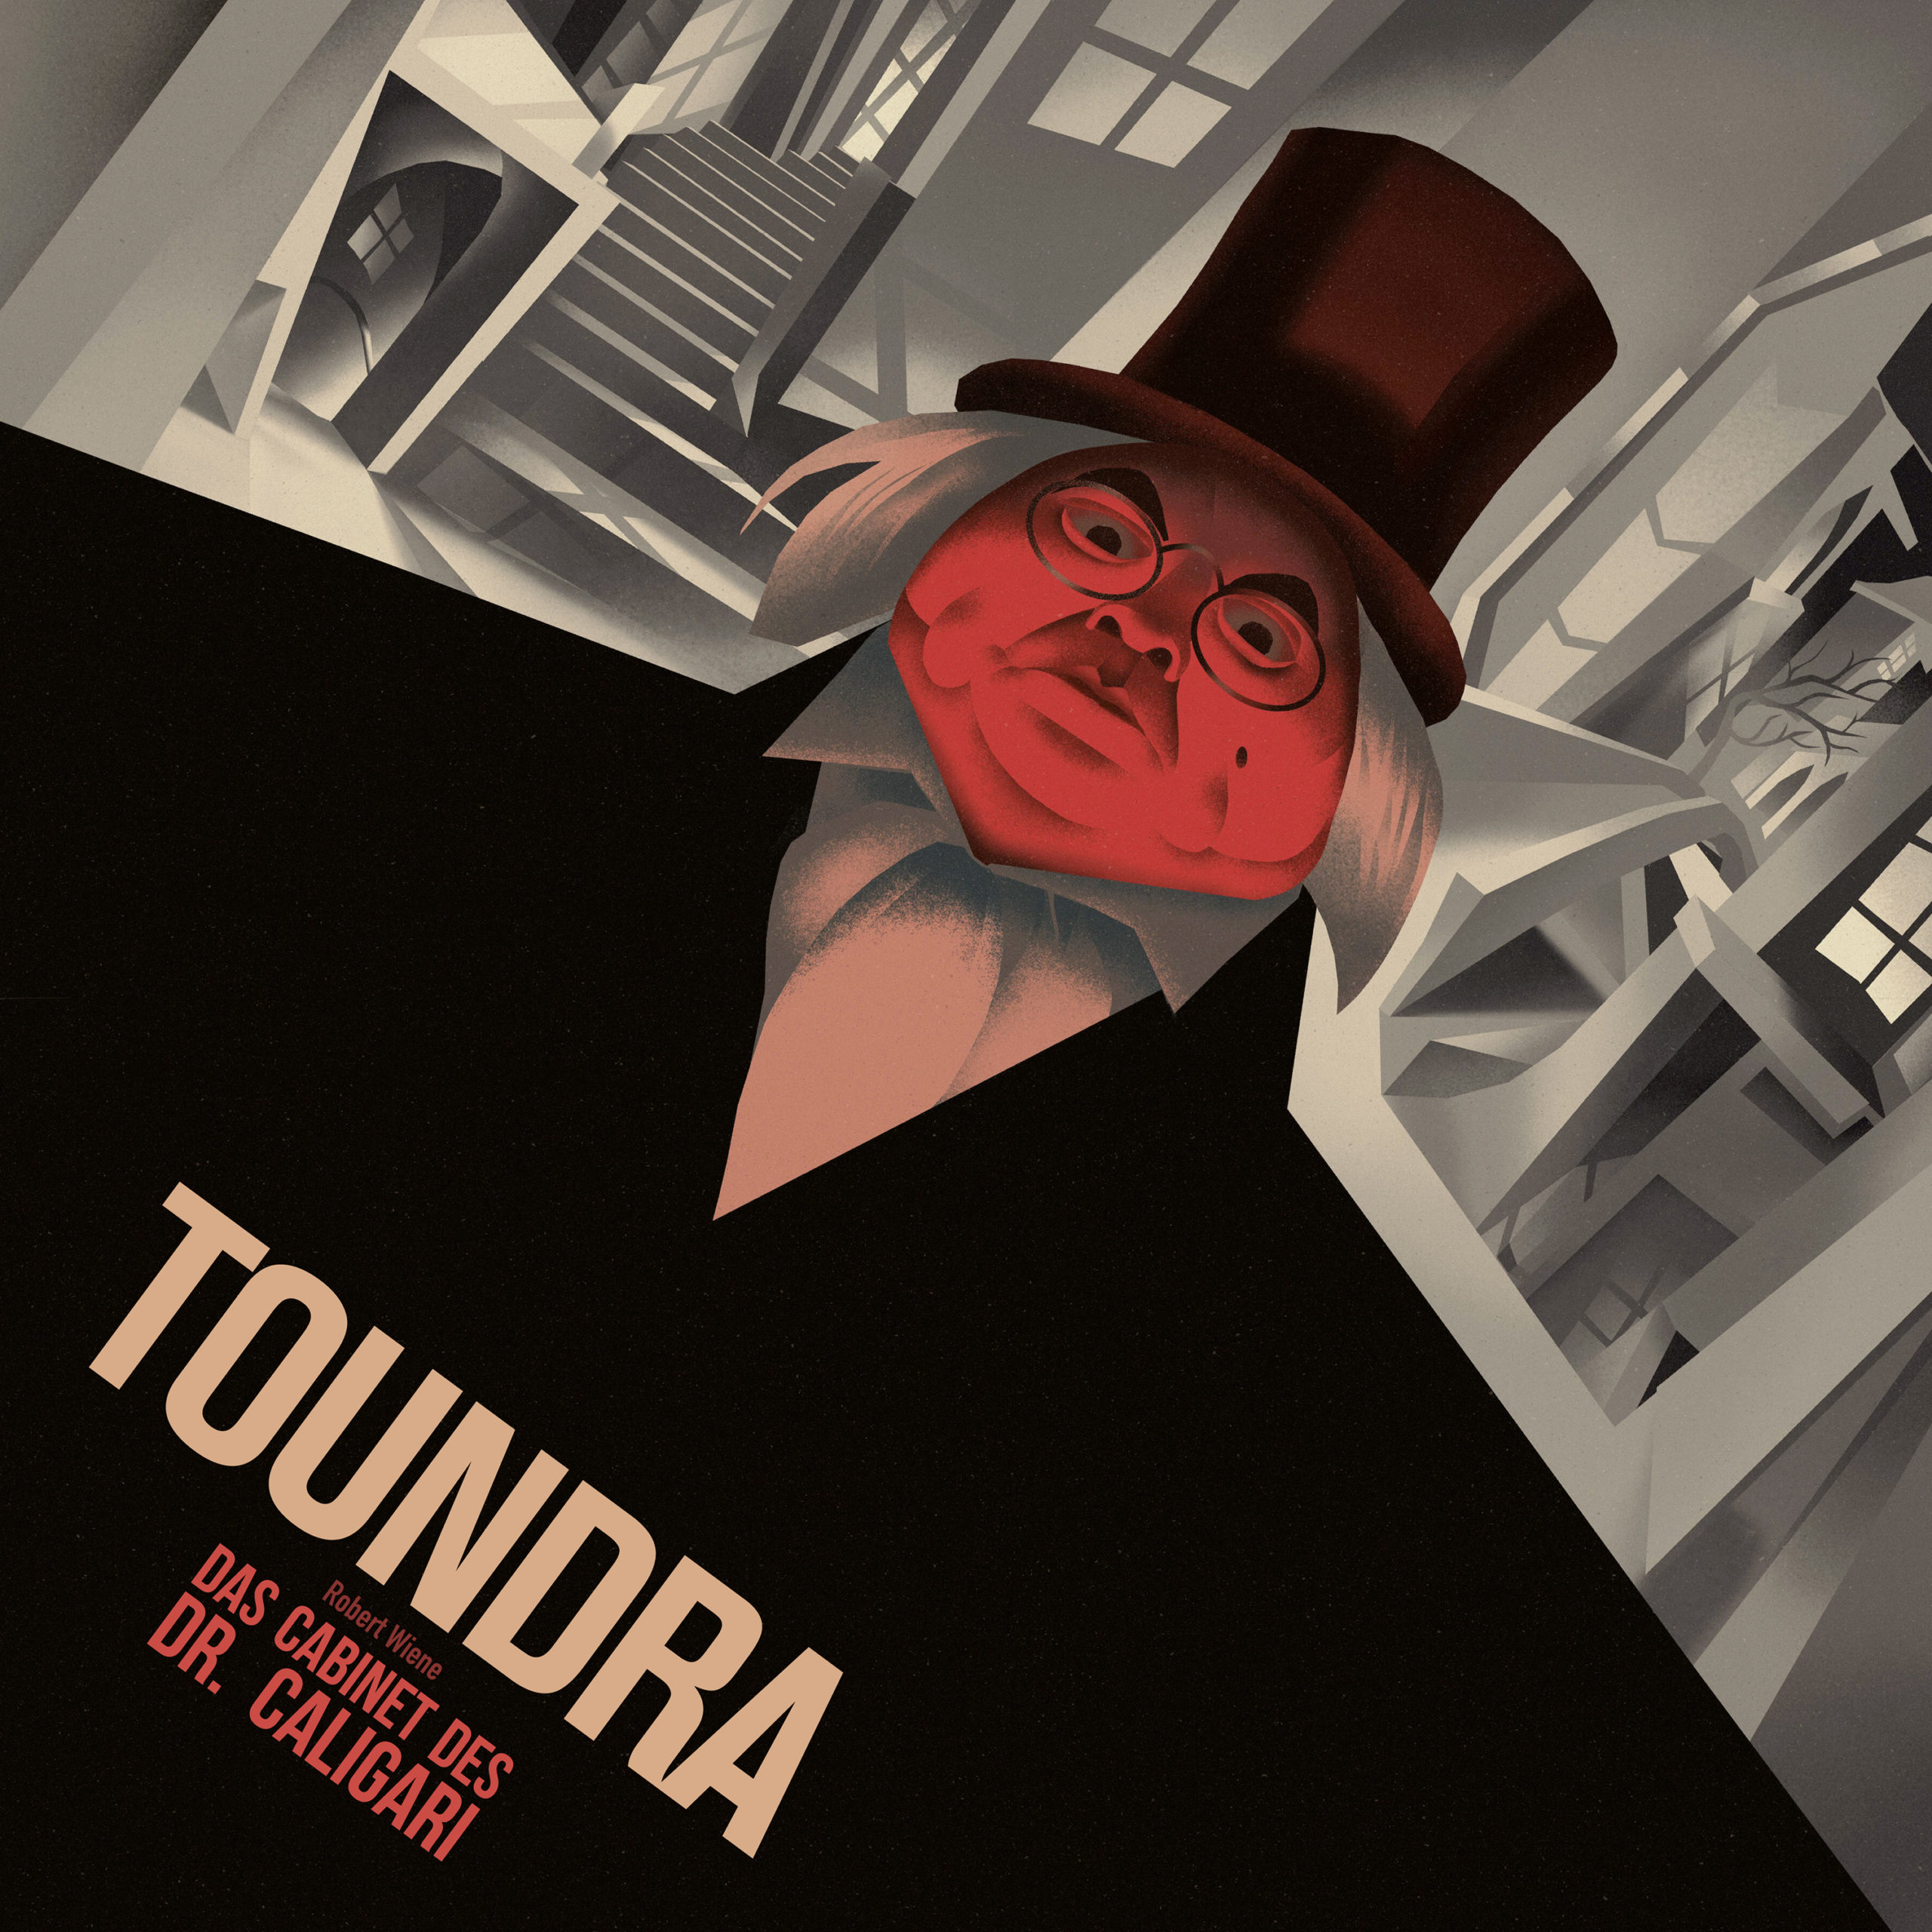 Toundra: Das Cabinet des Dr. Caligari